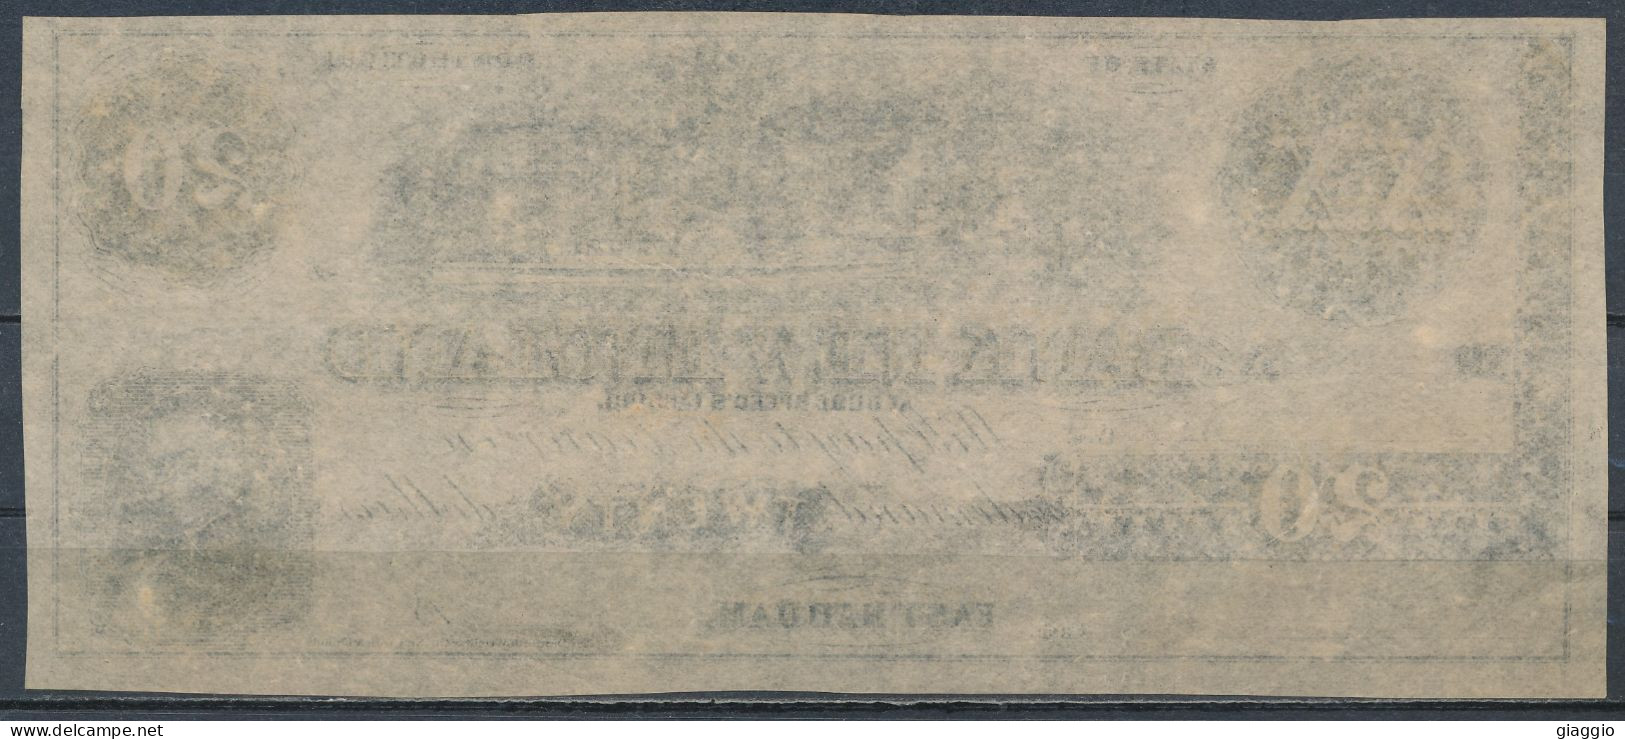 °°° USA - 20 DOLLARS 1860 BANK NEW ENGLAND °°° - Valuta Van De Bondsstaat (1861-1864)